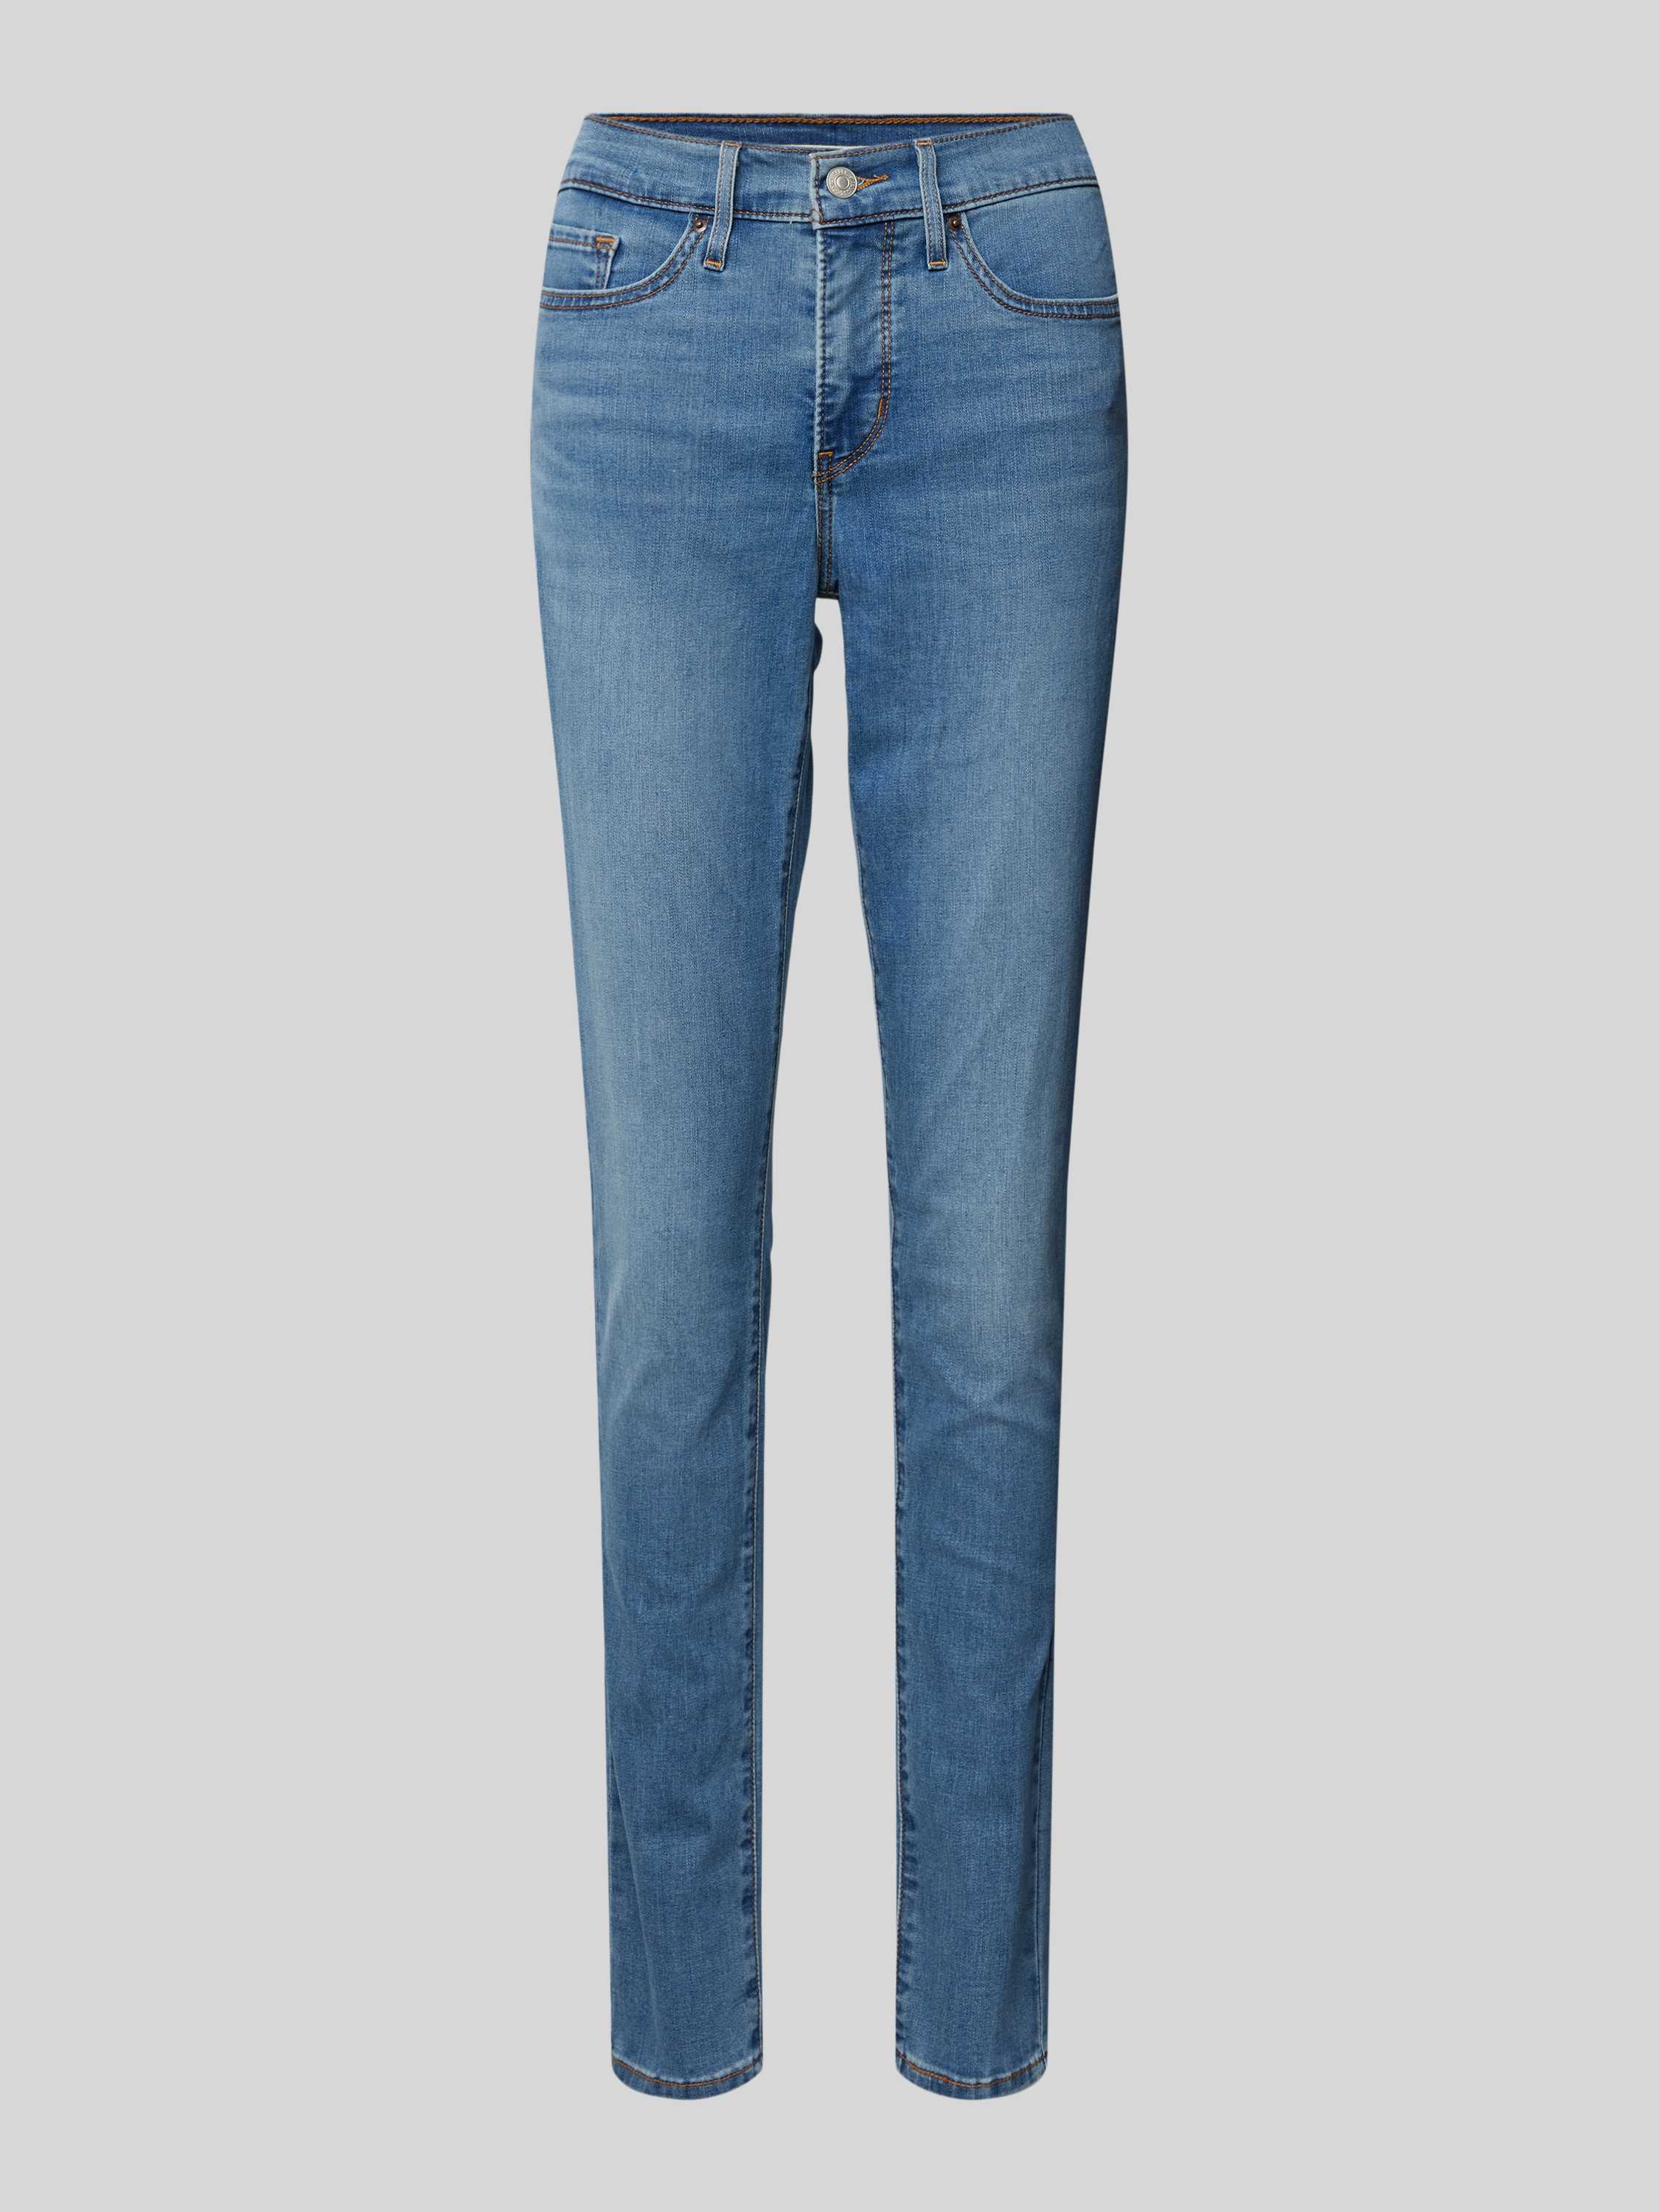 Levi's 300 Skinny fit jeans in 5-pocketmodel